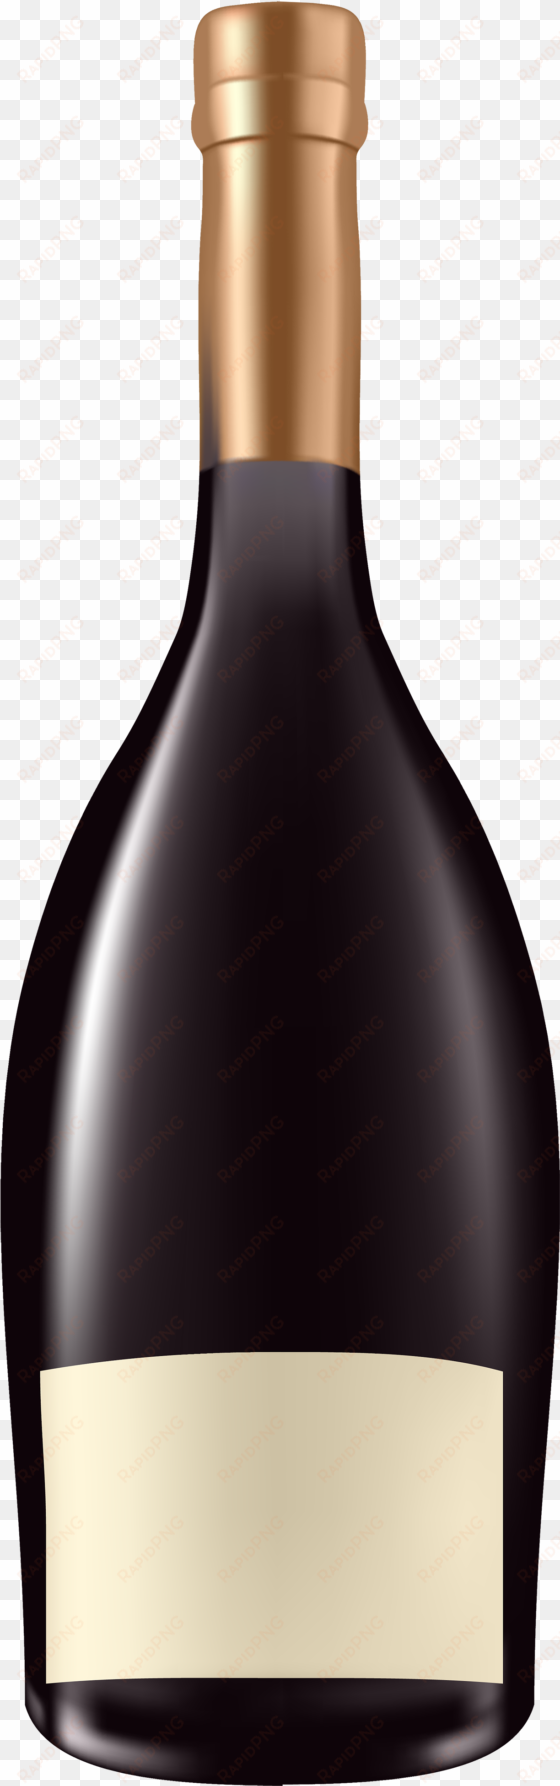 alcohol bottle png clipart - alcohol bottle clipart